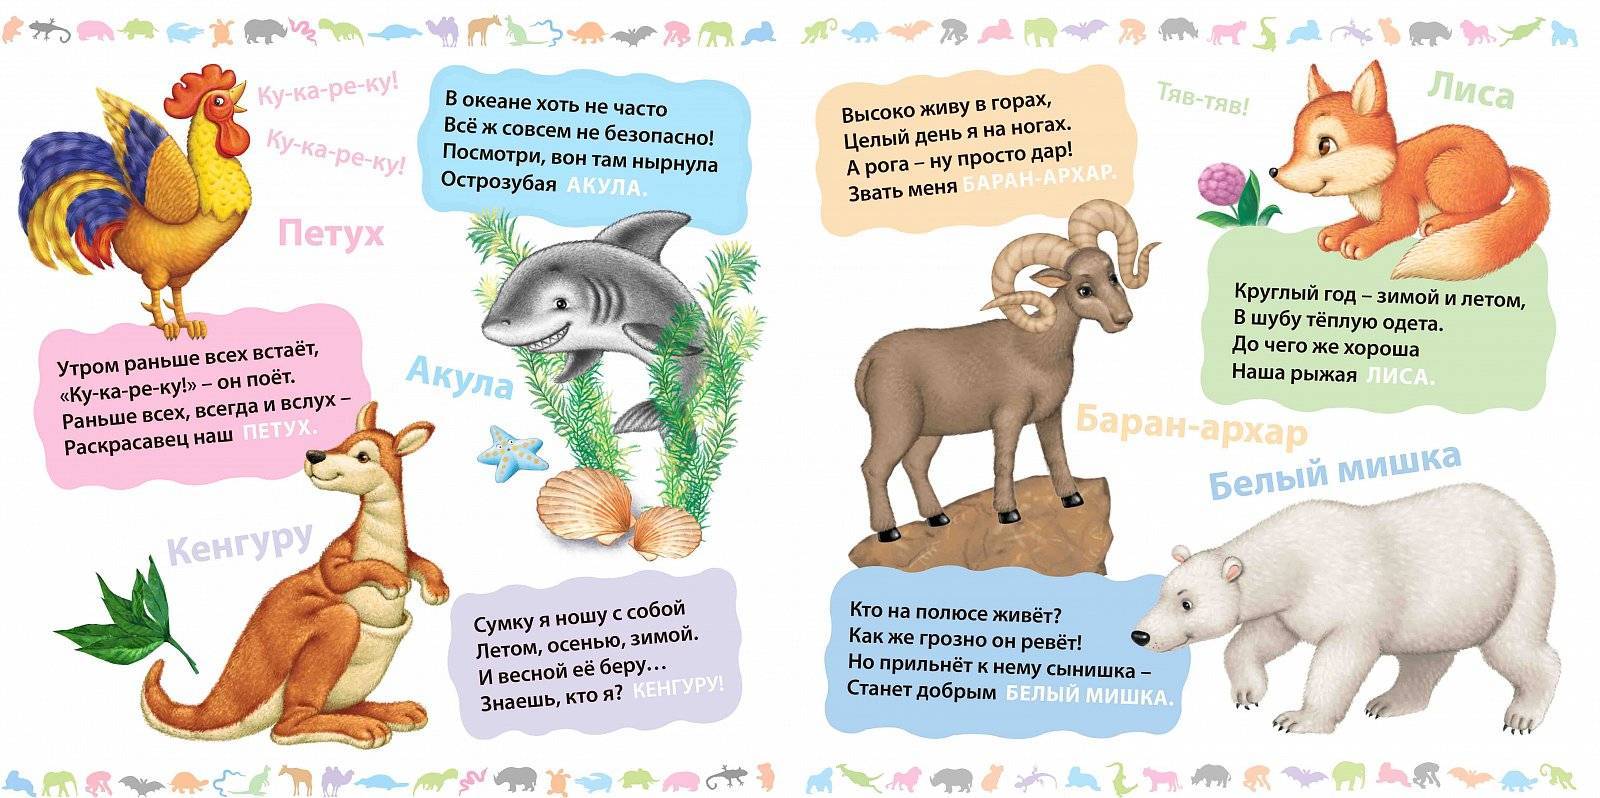 Загадки про животных (зверей) с ответами для детей короткие